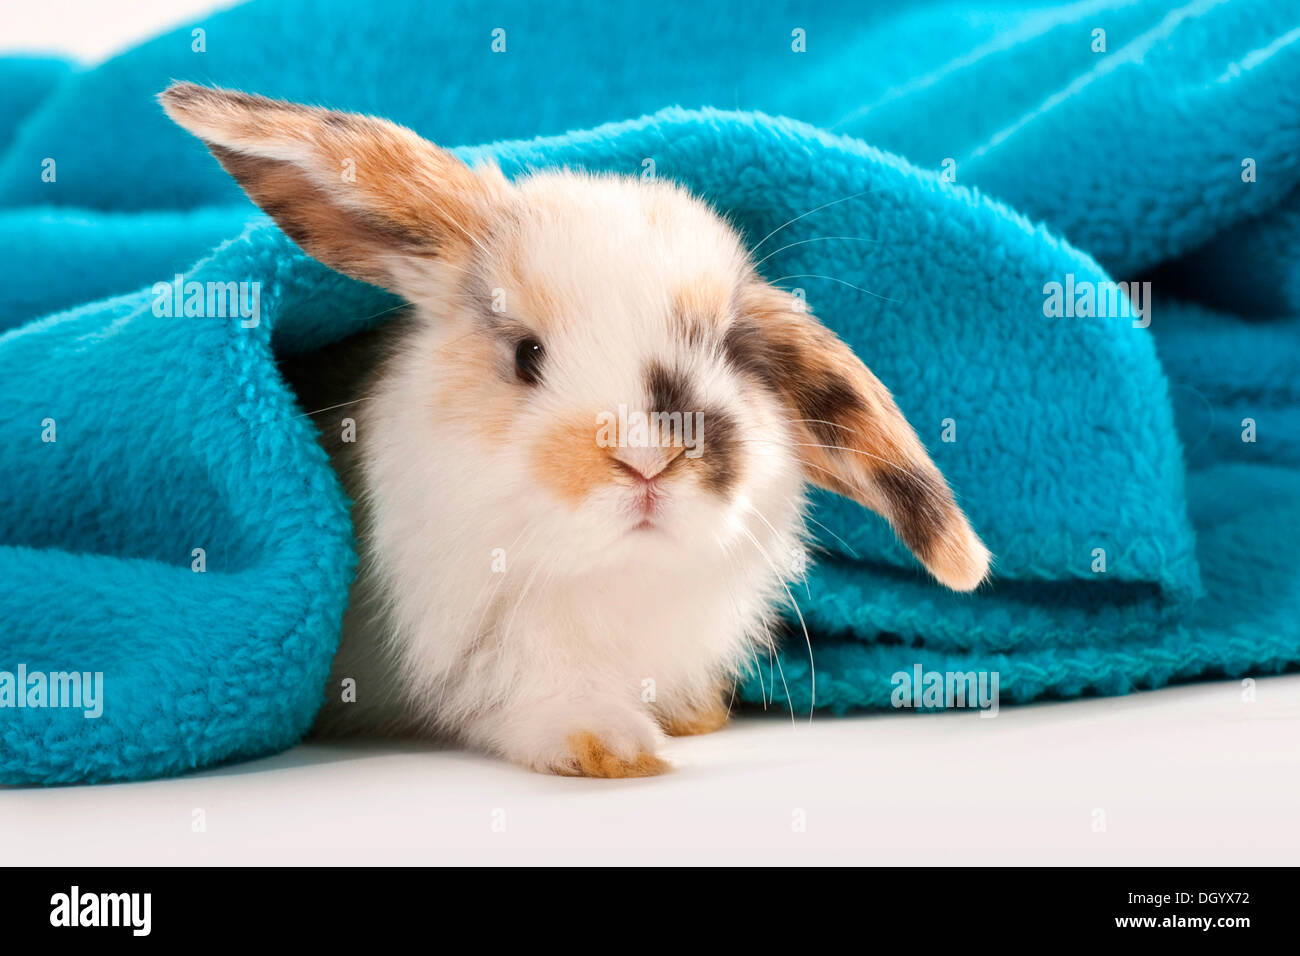 Junge Zwerg Kaninchen, Zwerg Widder, liegend unter Decke Stockfotografie -  Alamy